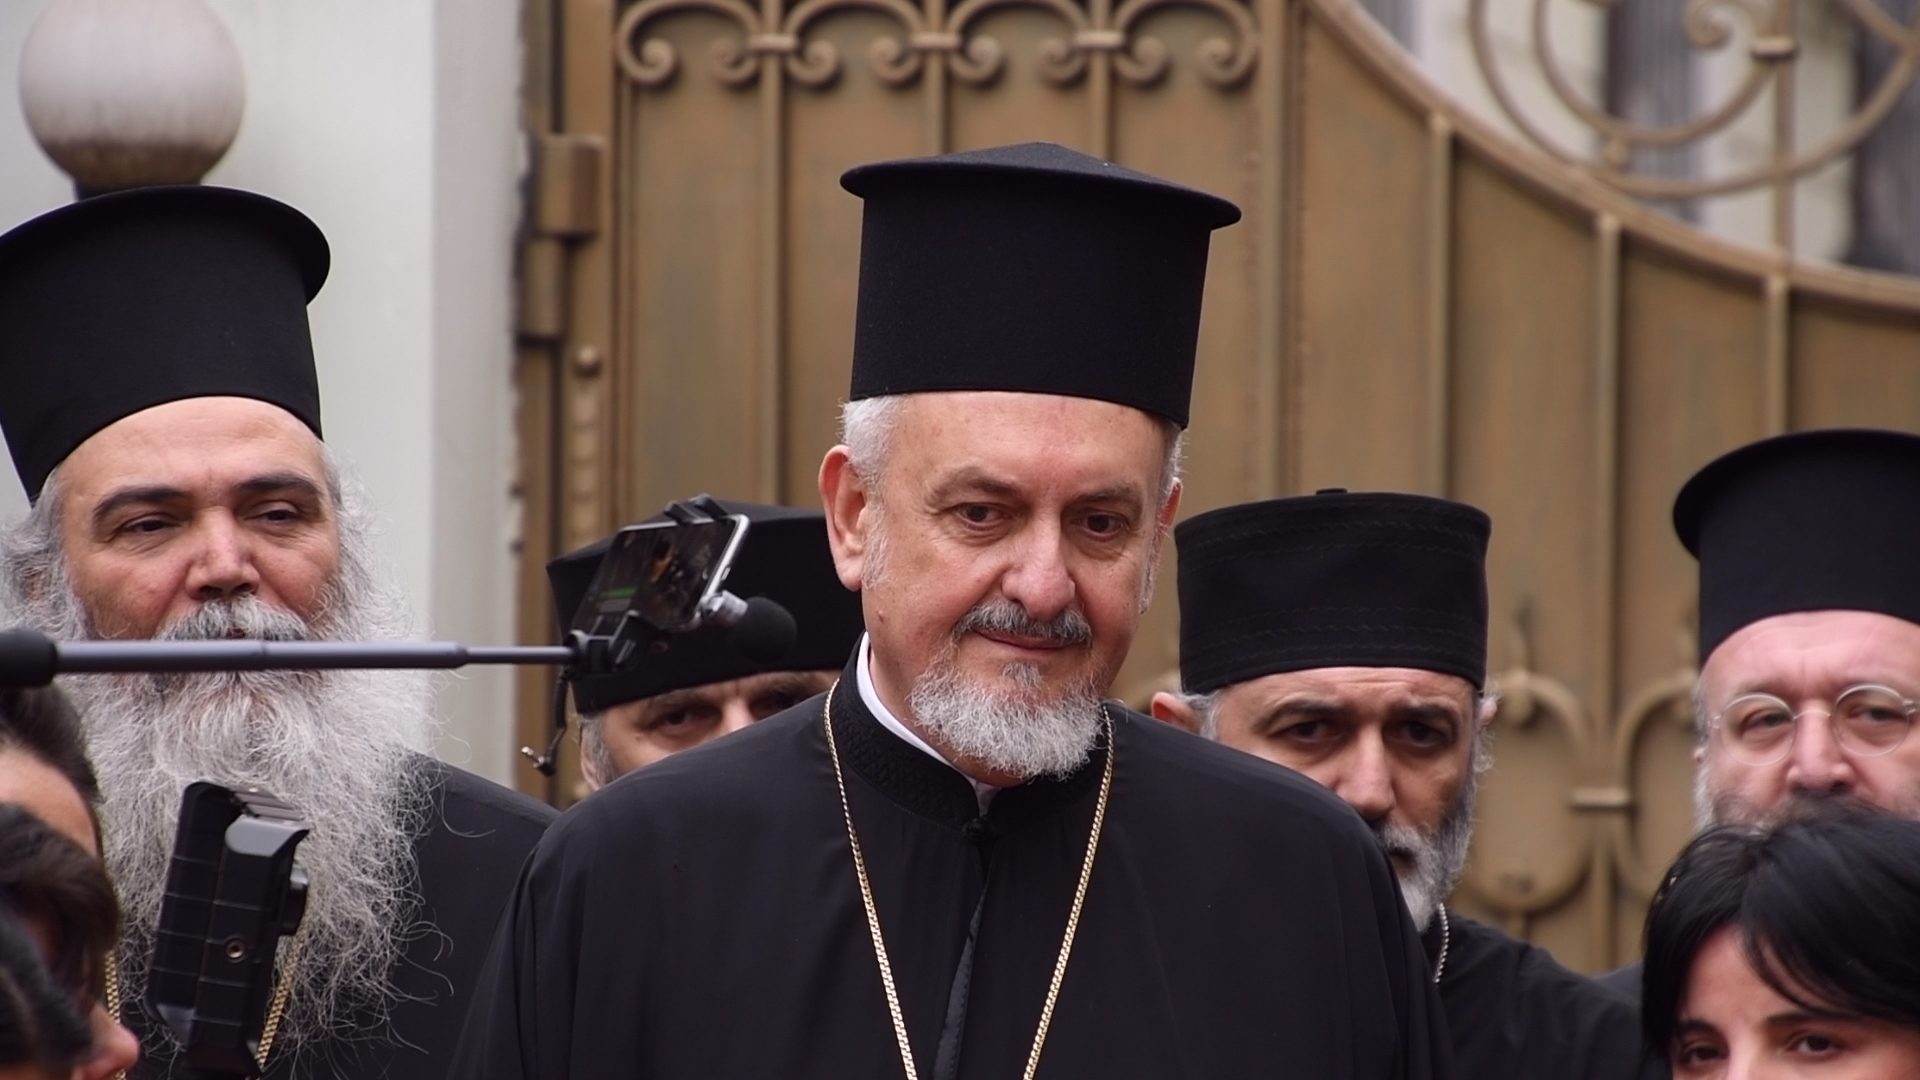 Emmanuel Православная церковь Украины Православная церковь Украины